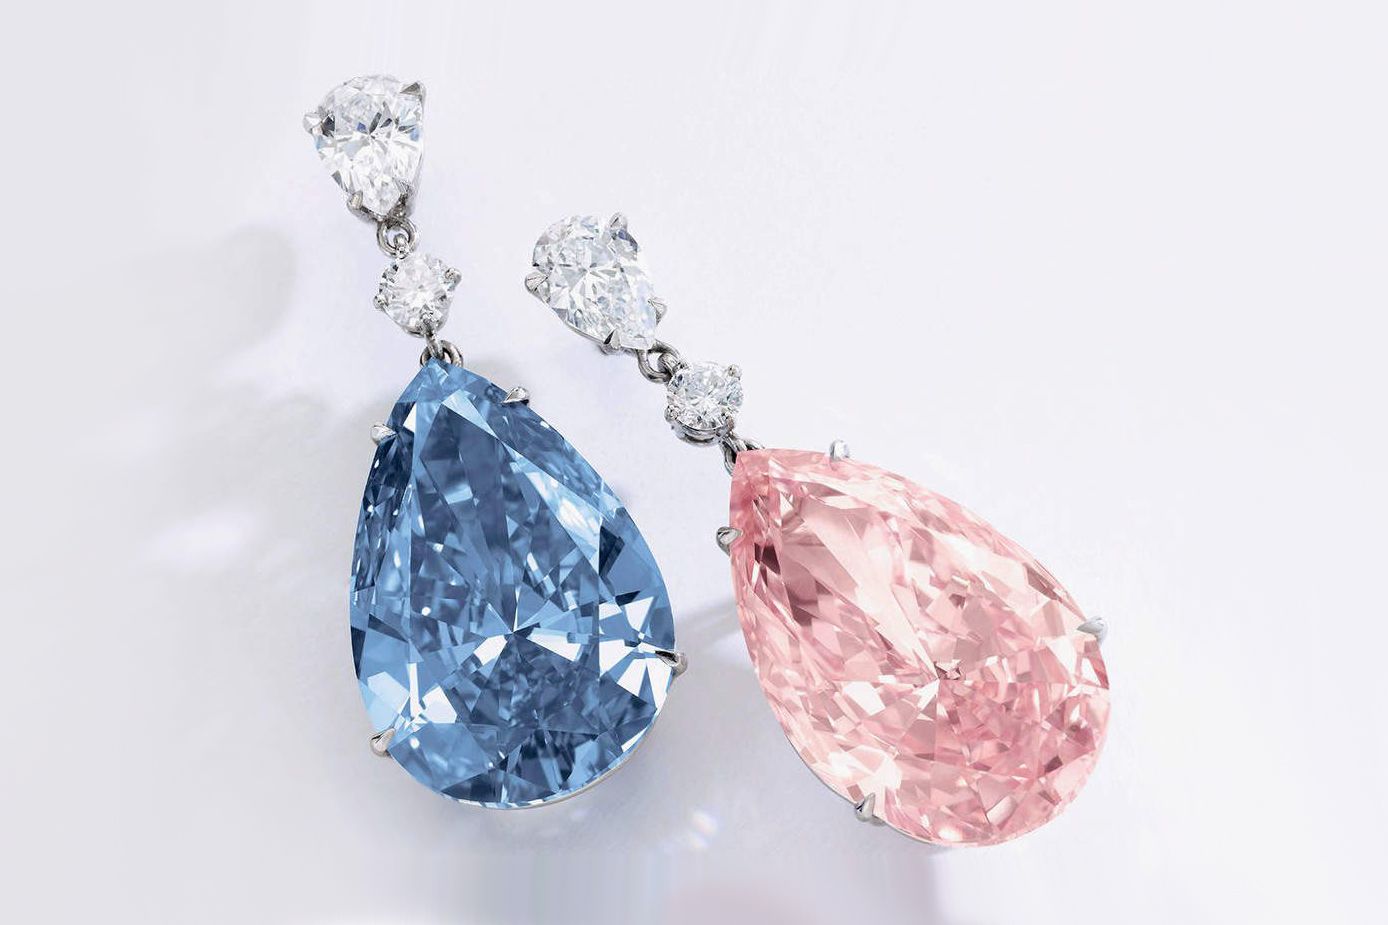  Алмазы Аполлон и Артемида, проданные в мае 2017 года